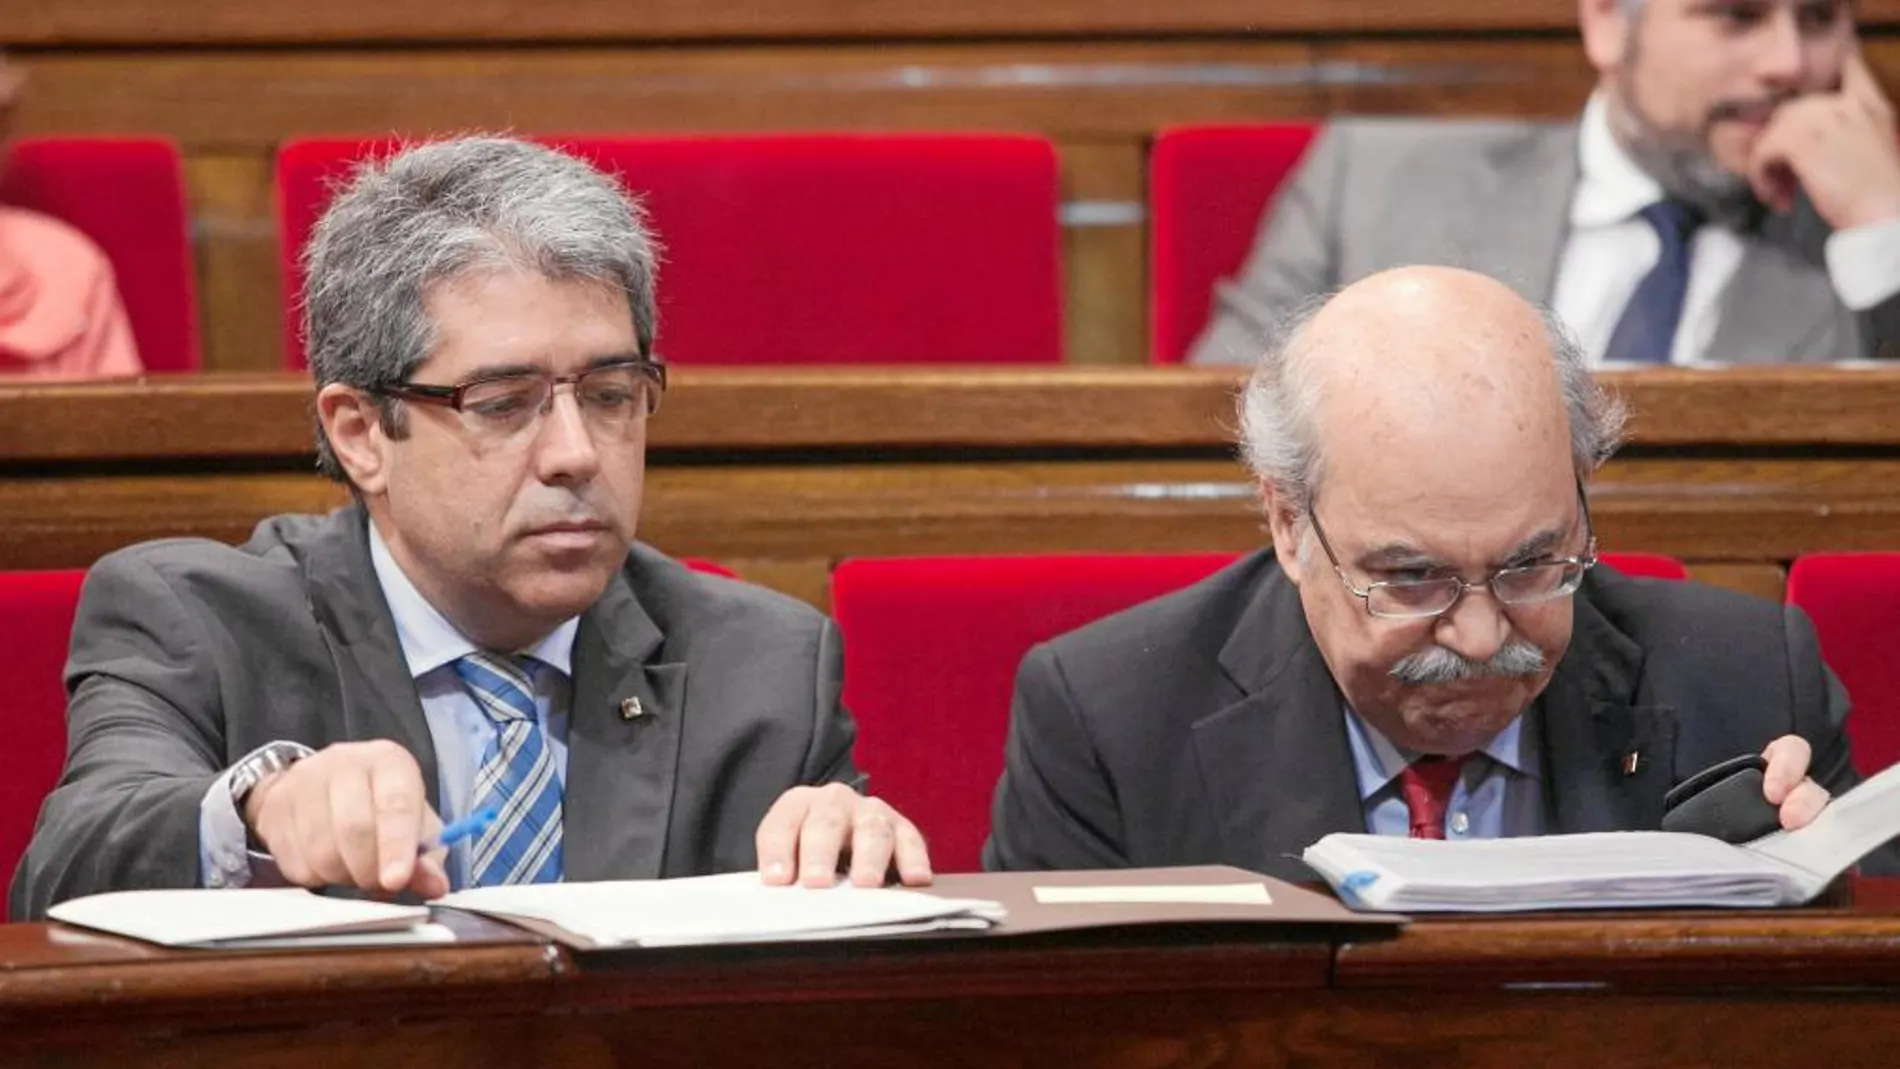 Homs y Mas-Colell, en el Parlament esta semana